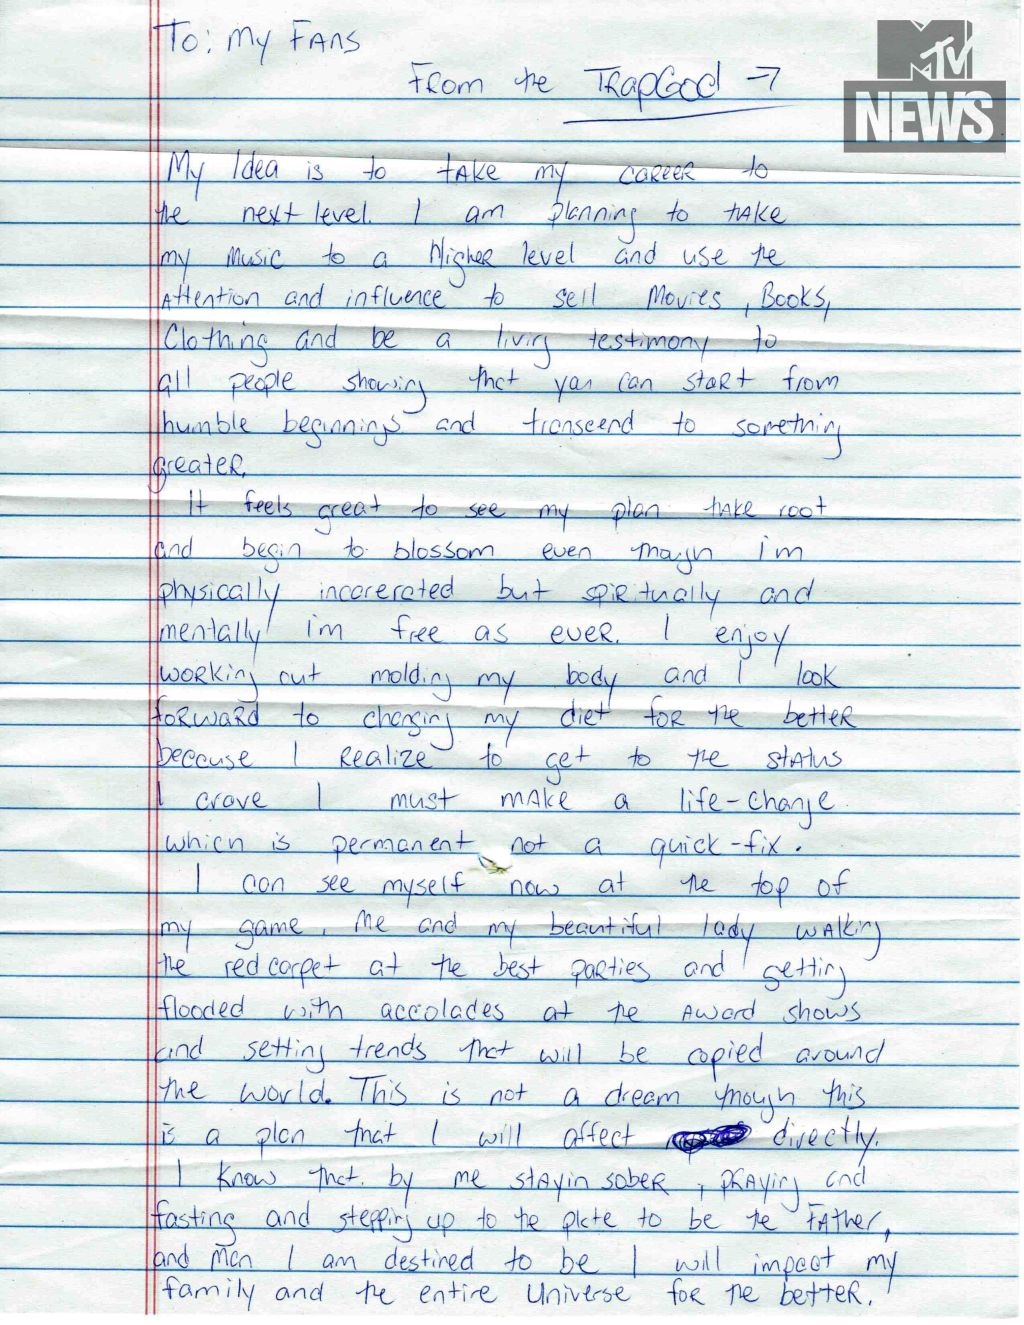 Gucci Mane letter